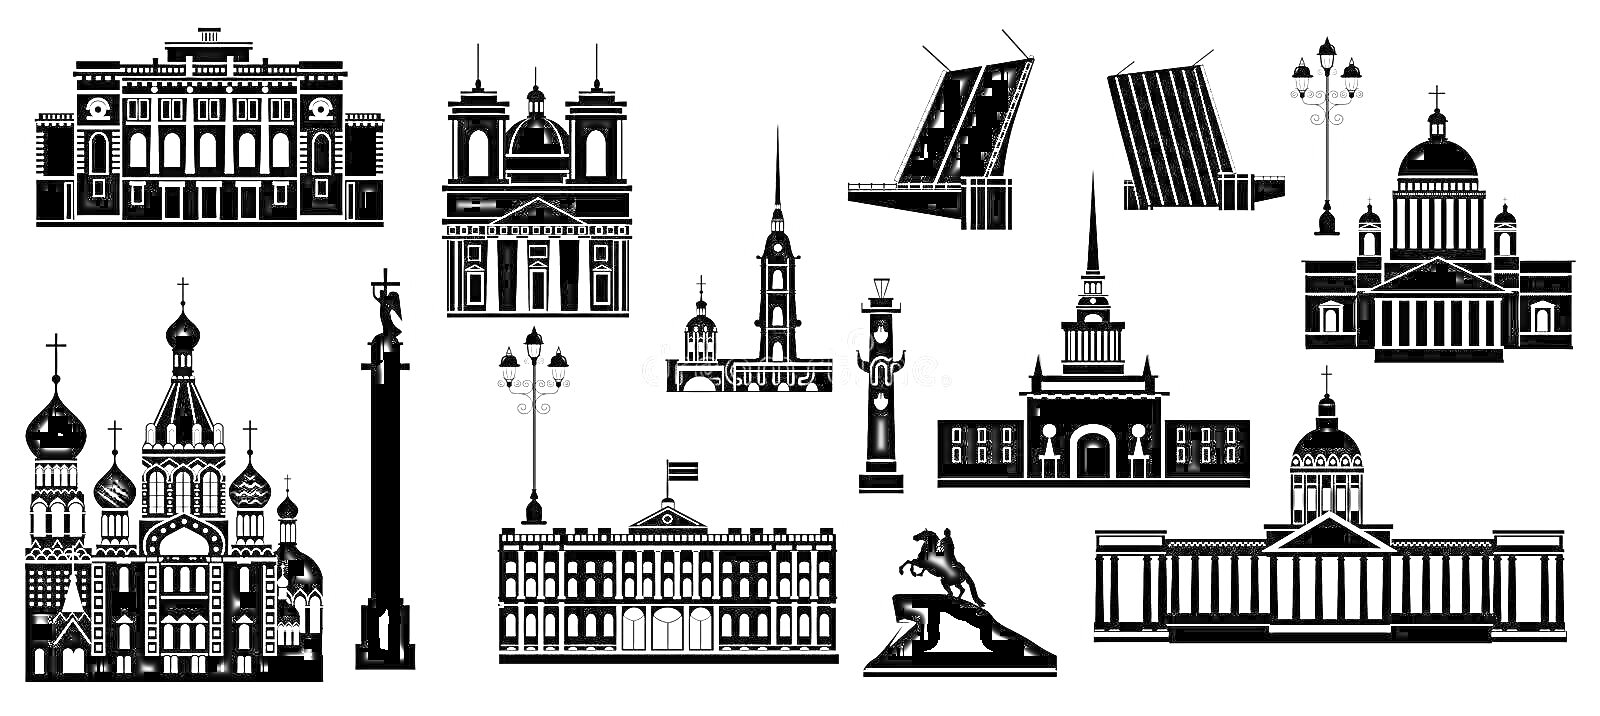 Раскраска Архитектурные памятники Санкт-Петербурга, включая здания, мосты и памятники